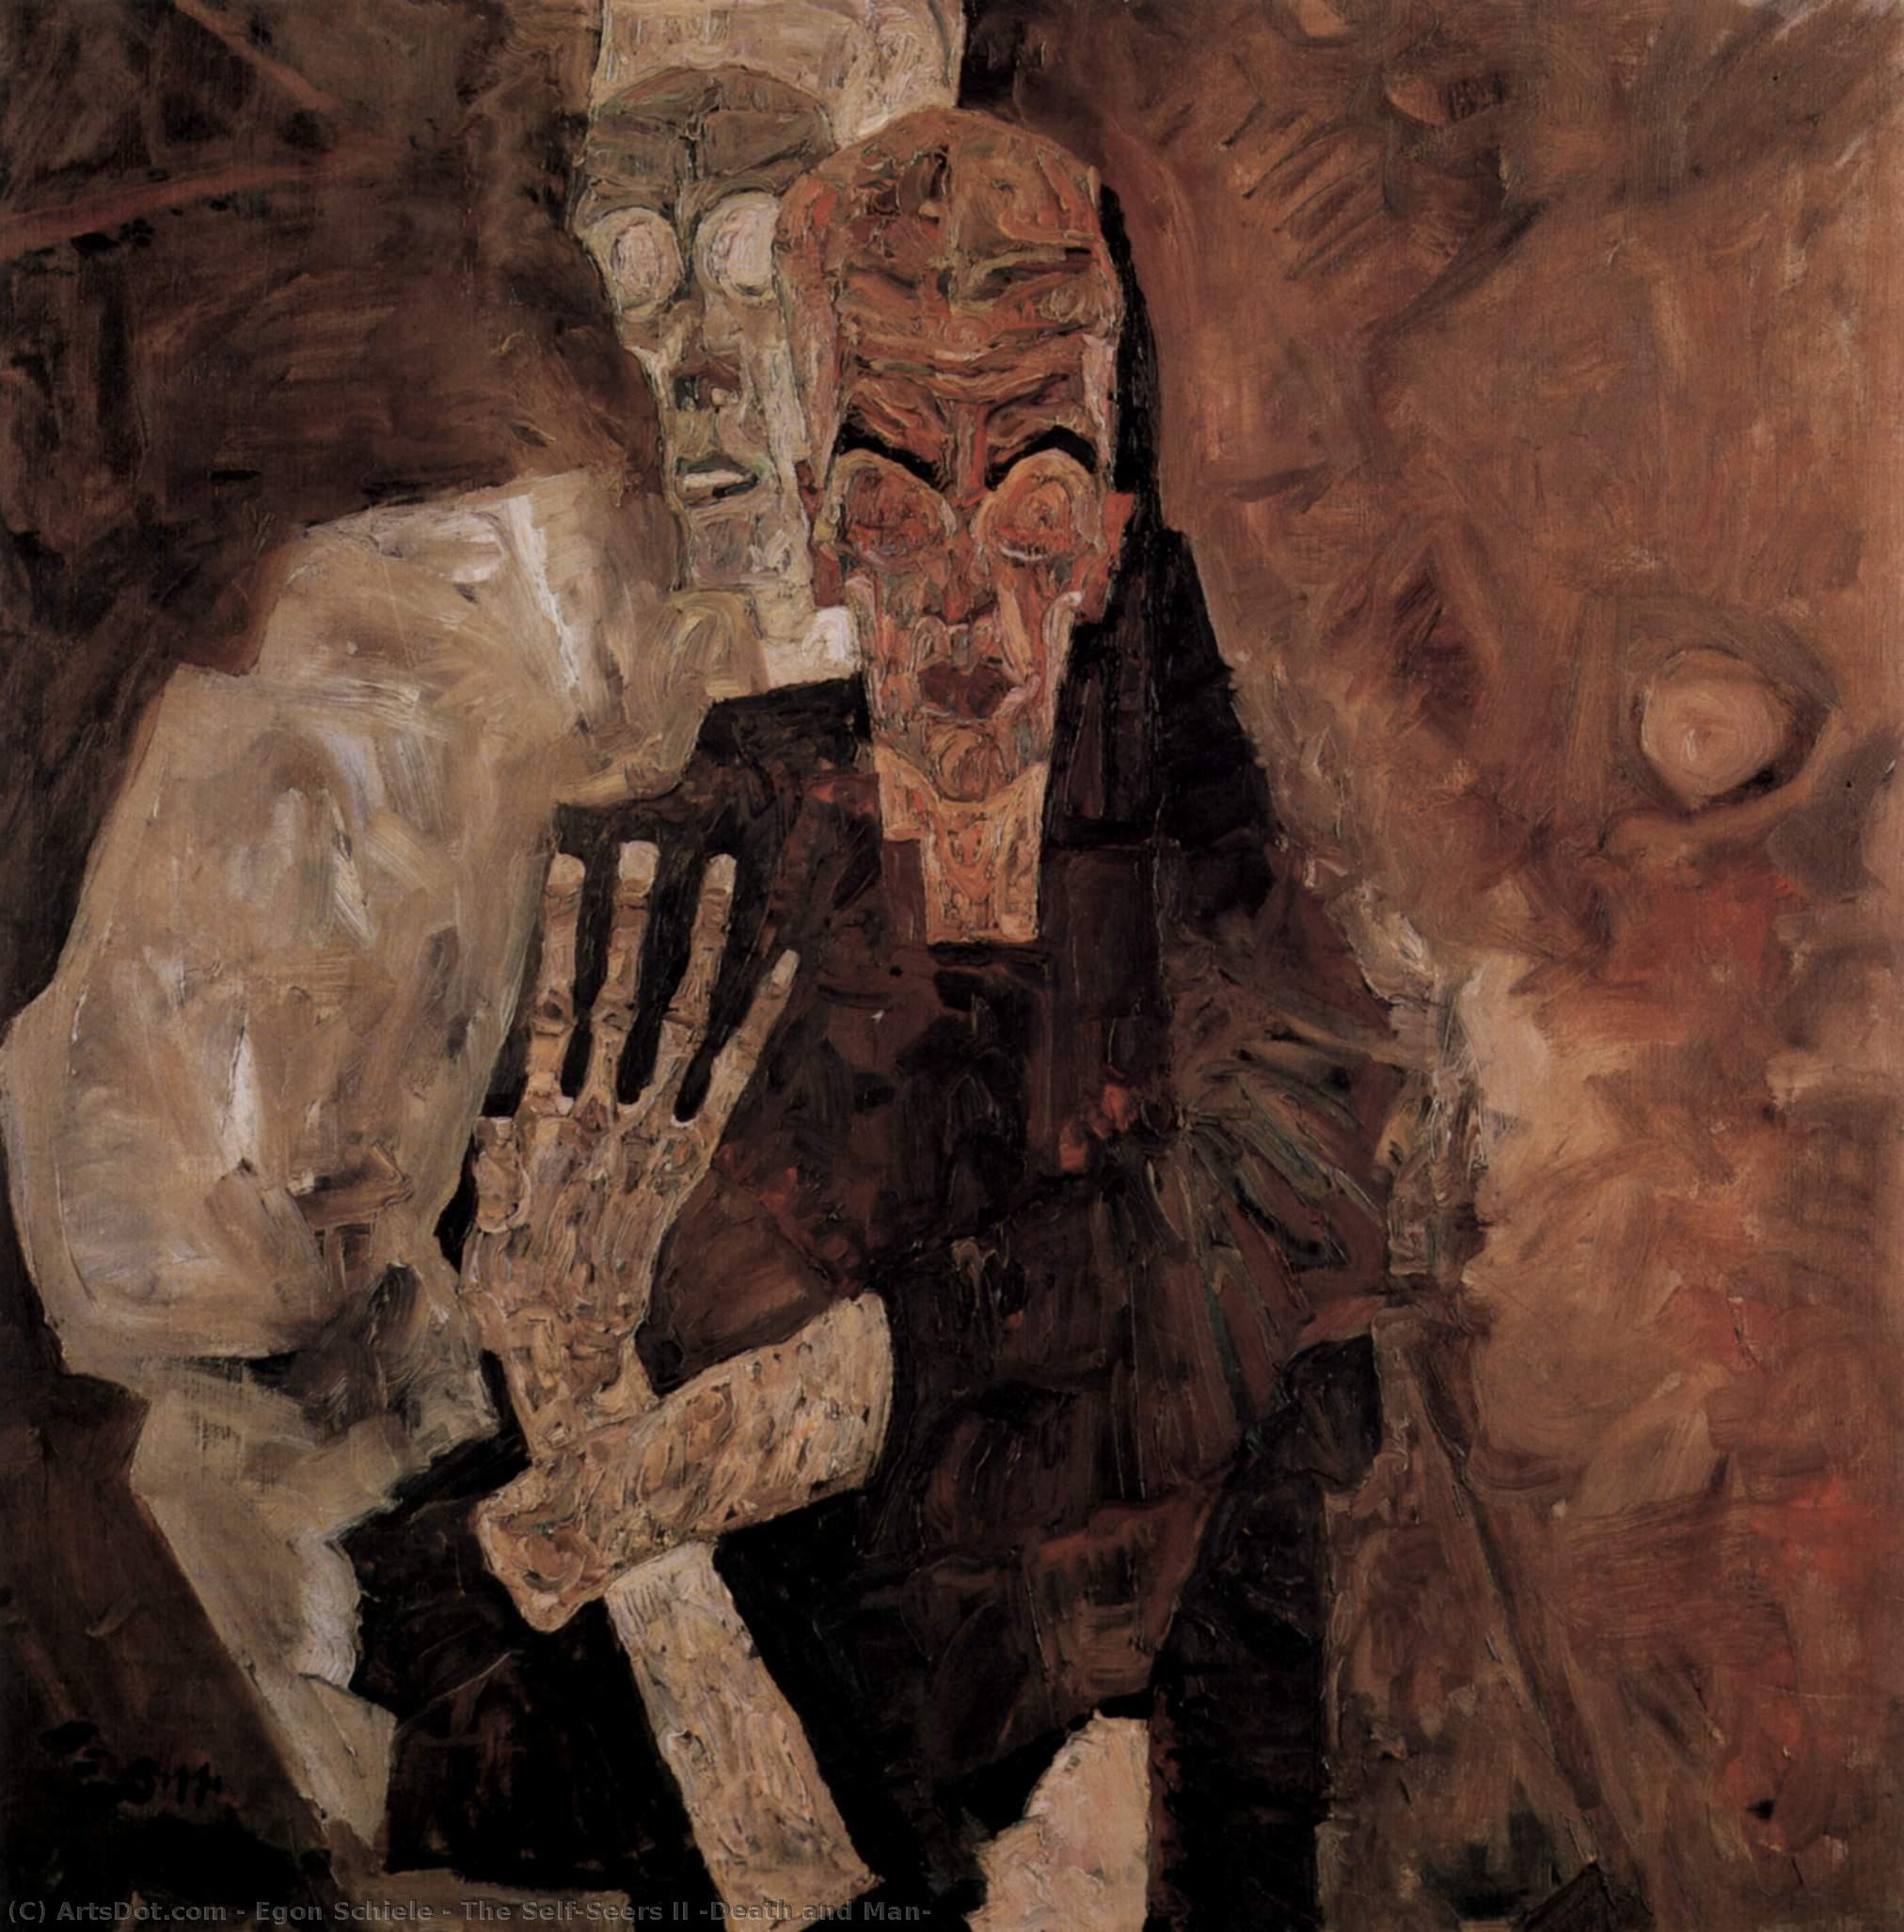 WikiOO.org - Εγκυκλοπαίδεια Καλών Τεχνών - Ζωγραφική, έργα τέχνης Egon Schiele - The Self-Seers II (Death and Man)